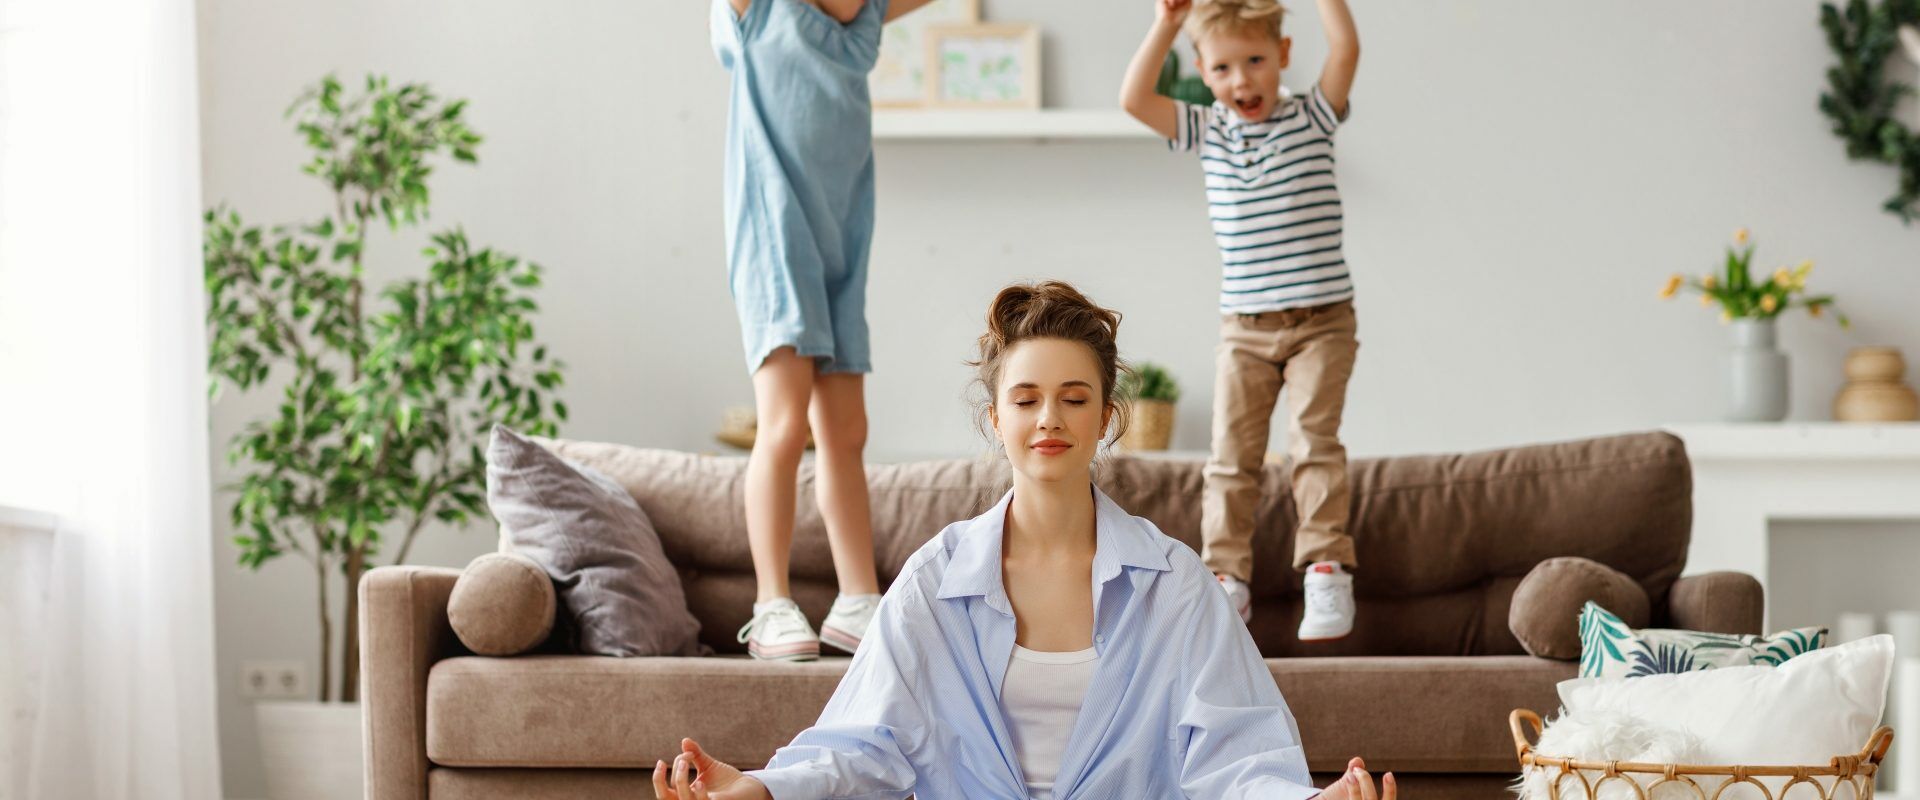 Work-life balance - jak odnaleźć równowagę? Młoda mama siedzi po turecku na podłodze w salonie i medytuje. Za nią na kanapie skaczą dzieci, obok stoi wiklinowy kosz z kocami i poduszką.